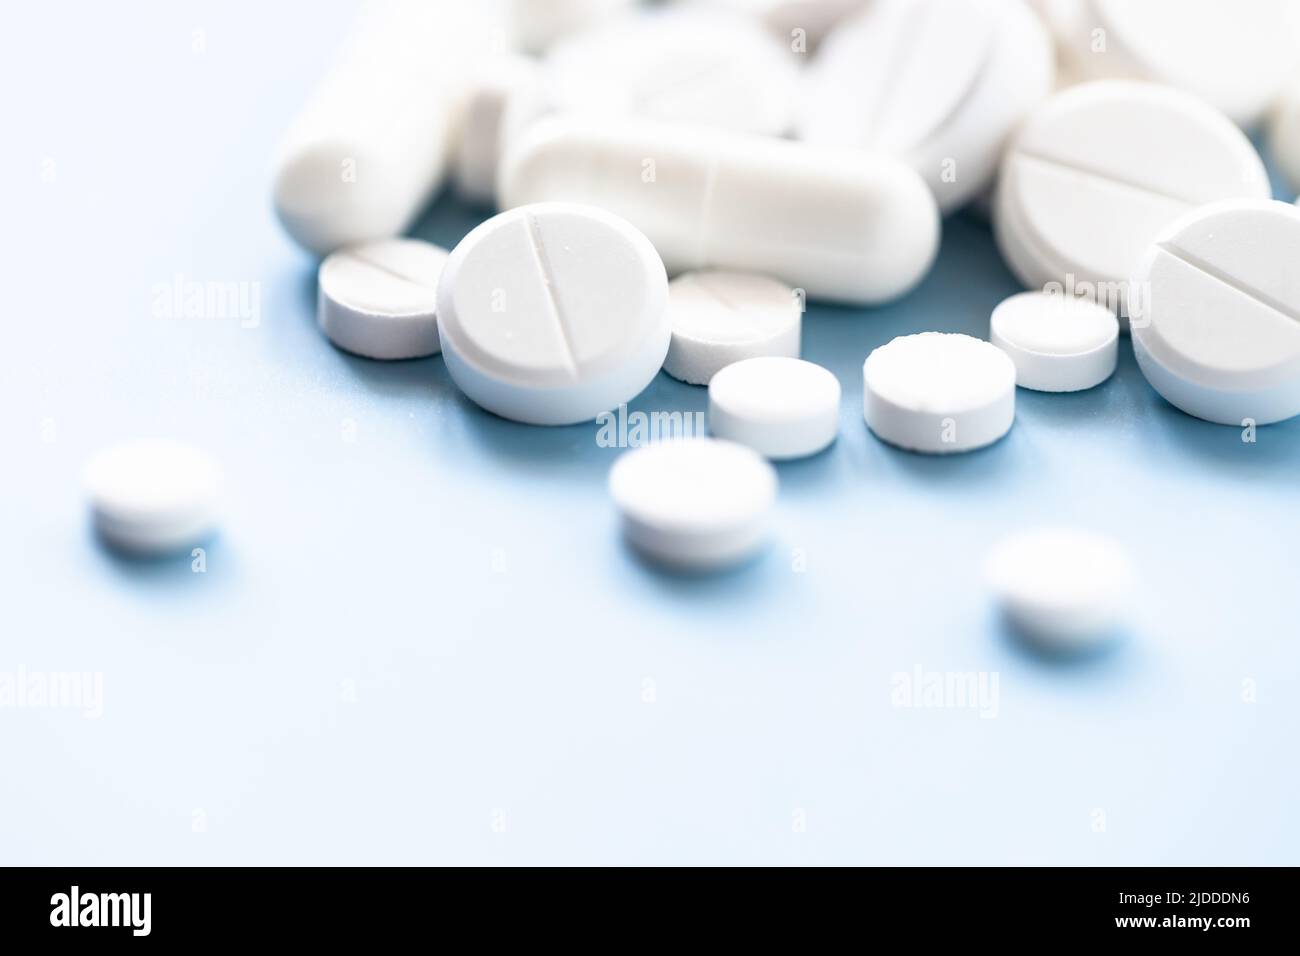 Various white pills on blue background against backlight. Stock Photo